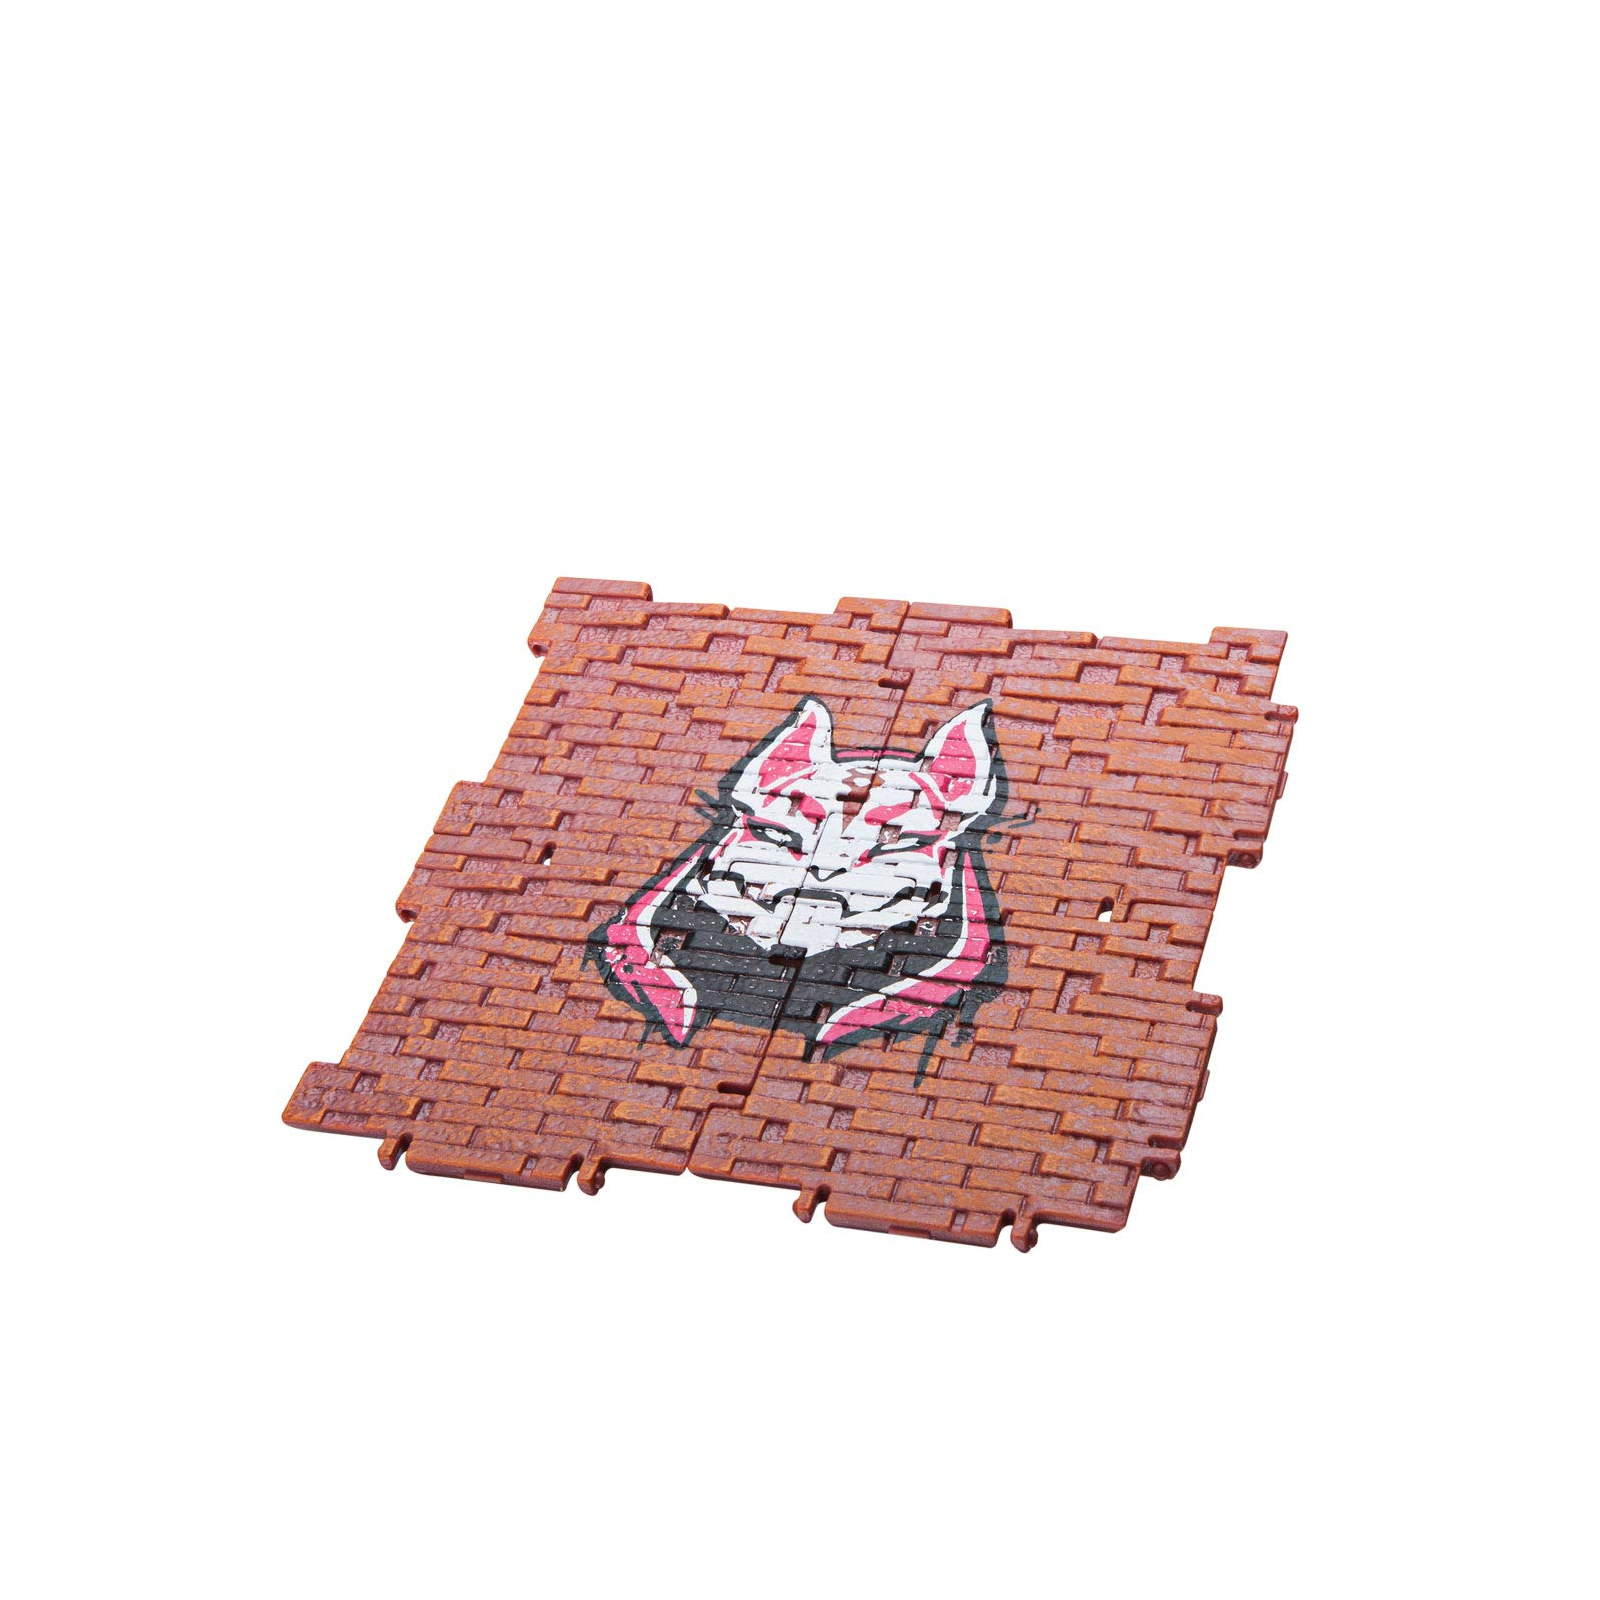 Фигурка для геймеров Jazwares Fortnite Llama Pinata набор аксессуаров (FNT0009) изображение 5